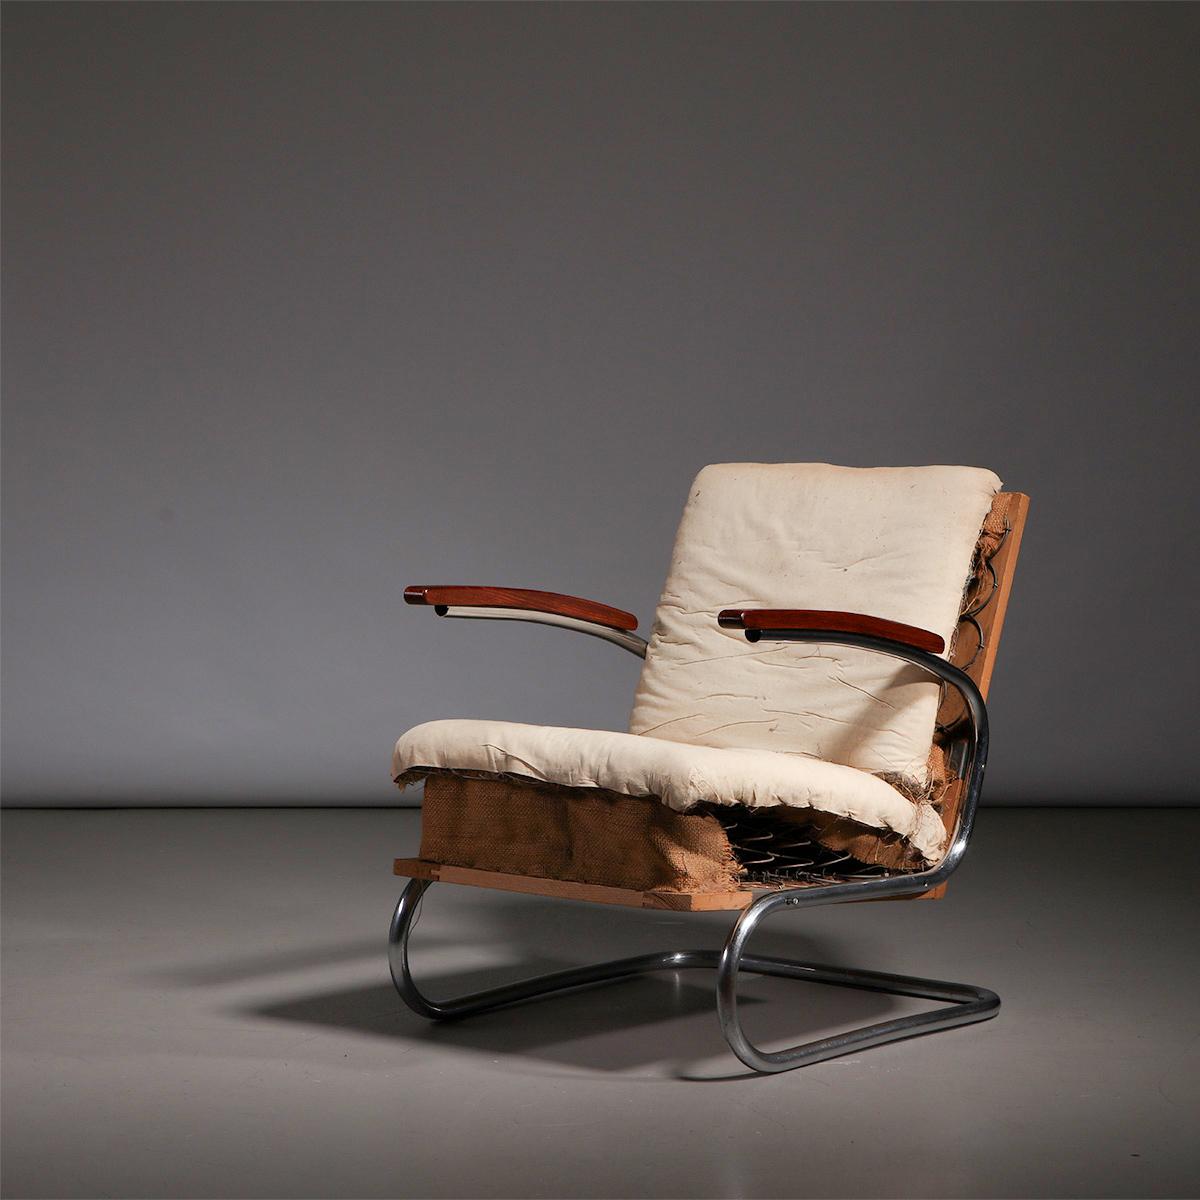 Freischwinger-Sessel aus verchromtem Bauhaus-Stahlrohr, Modell S411, hergestellt von Thonet in Deutschland, 1930er Jahre.

Dieser kultige S411 Freischwinger-Sessel hat einen eleganten, modernen Look und ist eine großartige Ergänzung für jedes